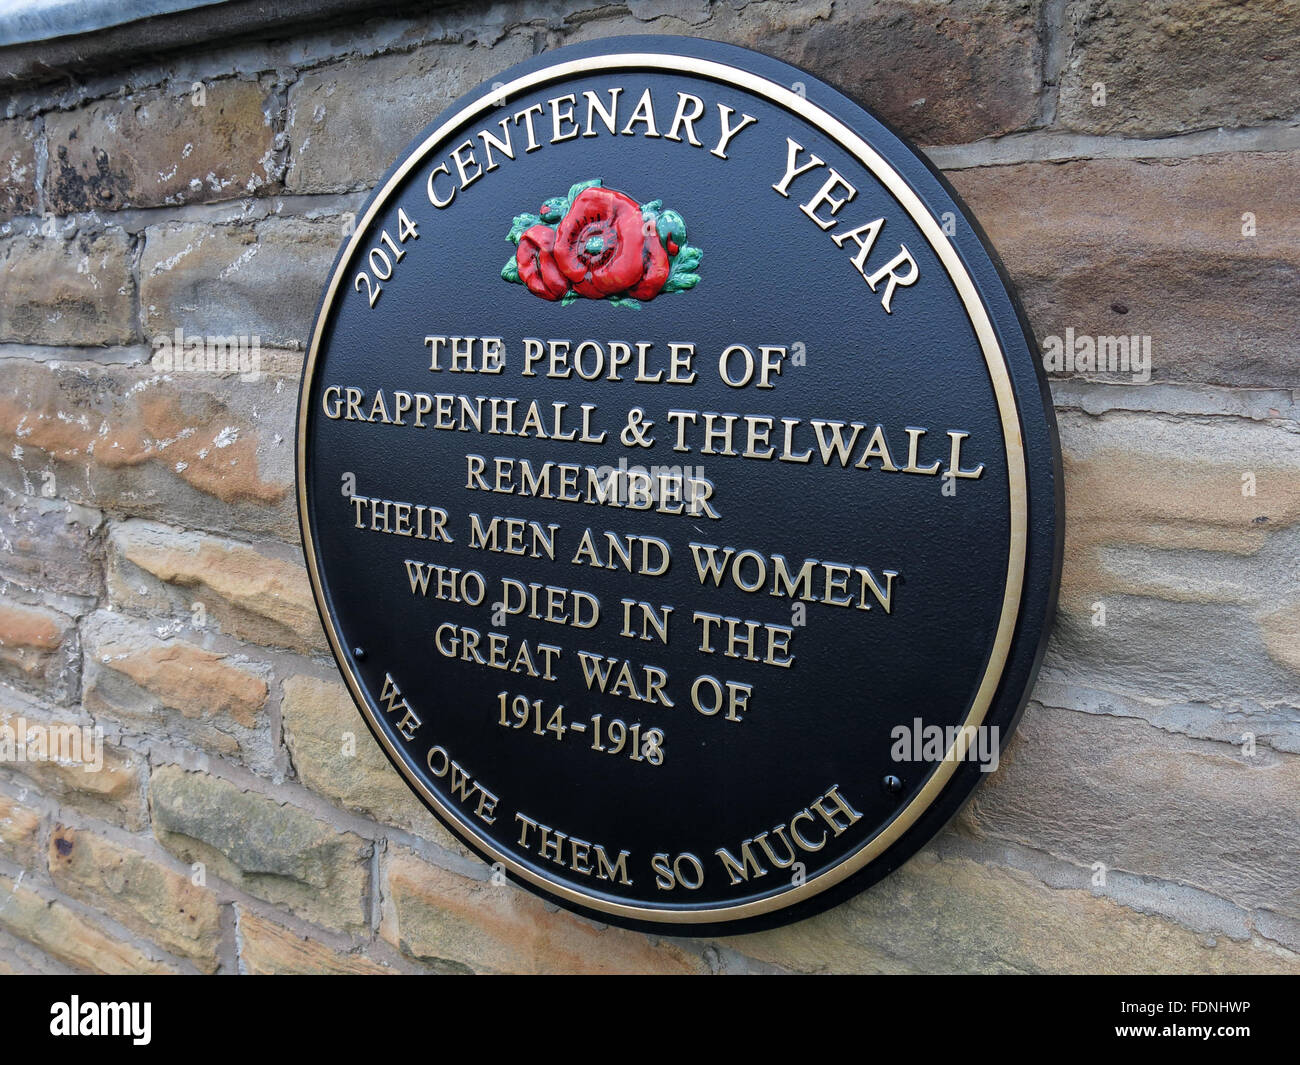 2014 année du centenaire de la plaque, Grappenhall & Thelwall - Grande guerre 1914-1918, Cheshire, Angleterre, Royaume-Uni - Église méthodiste Banque D'Images